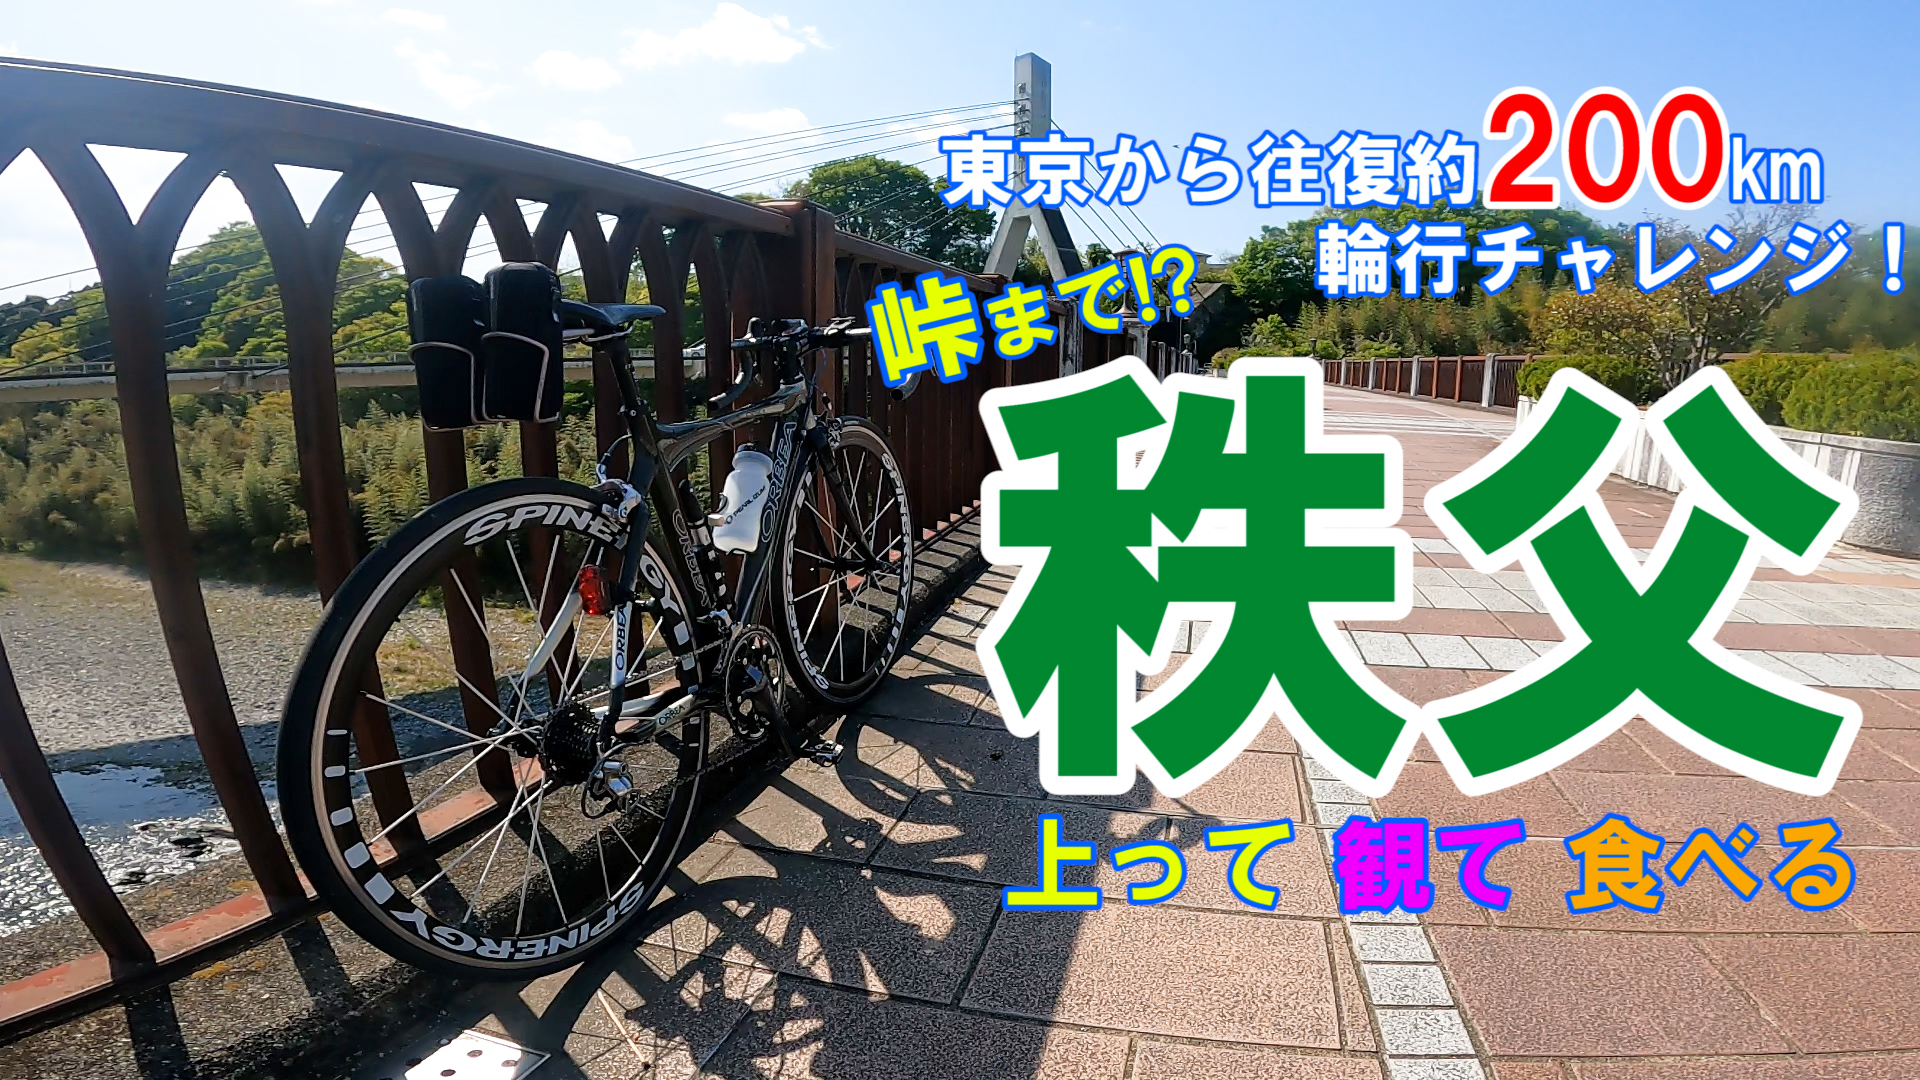 【自転車】東京から秩父 往復約200kmのロードバイク自転車旅